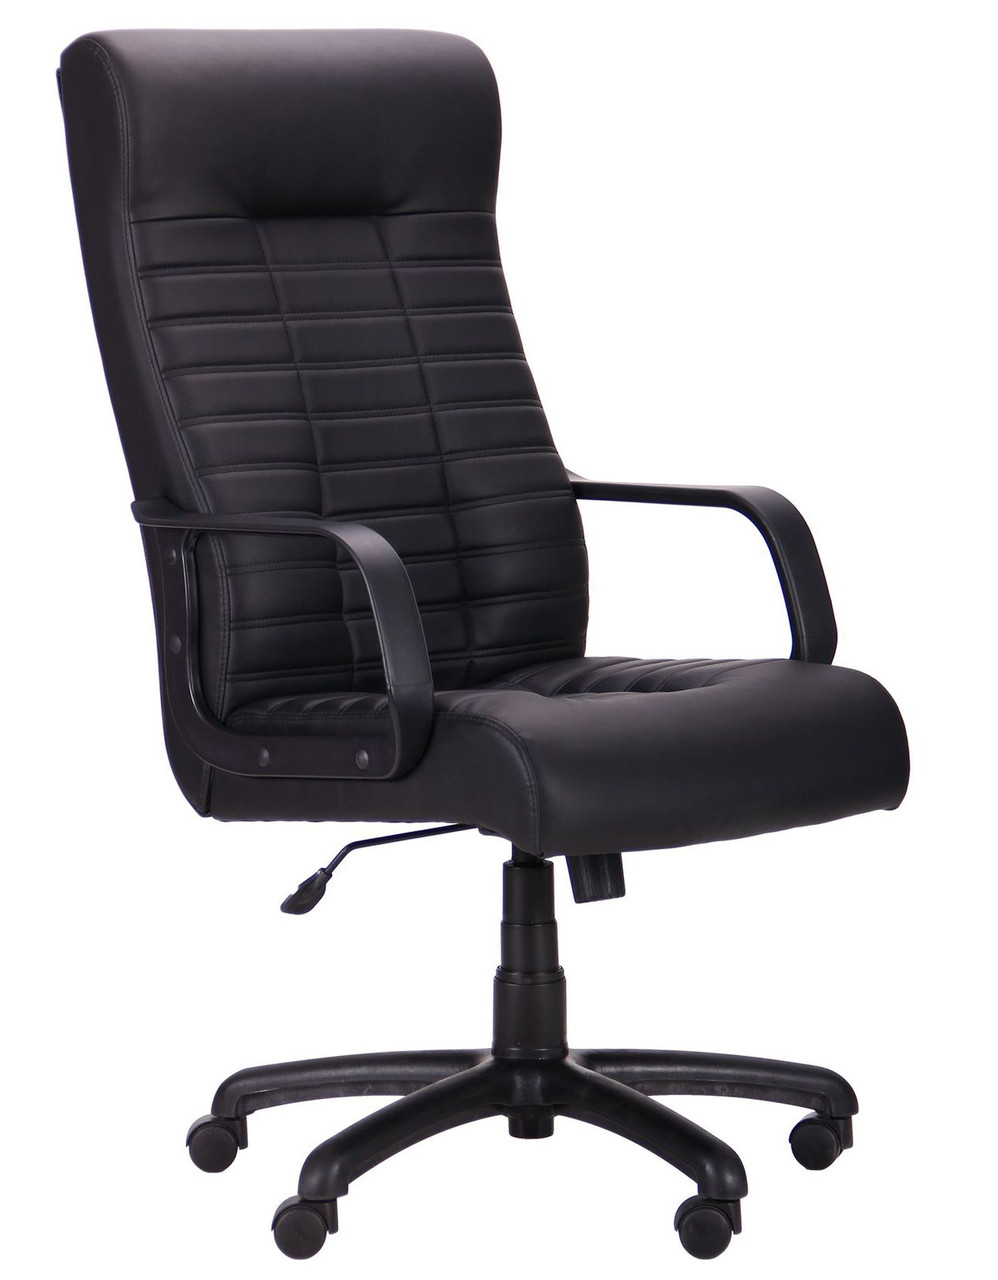 Комп'ютерне офісне крісло керівника Атлетик-М AMF чорне, крісло для роботи вдома та офісу Атлетик чорне